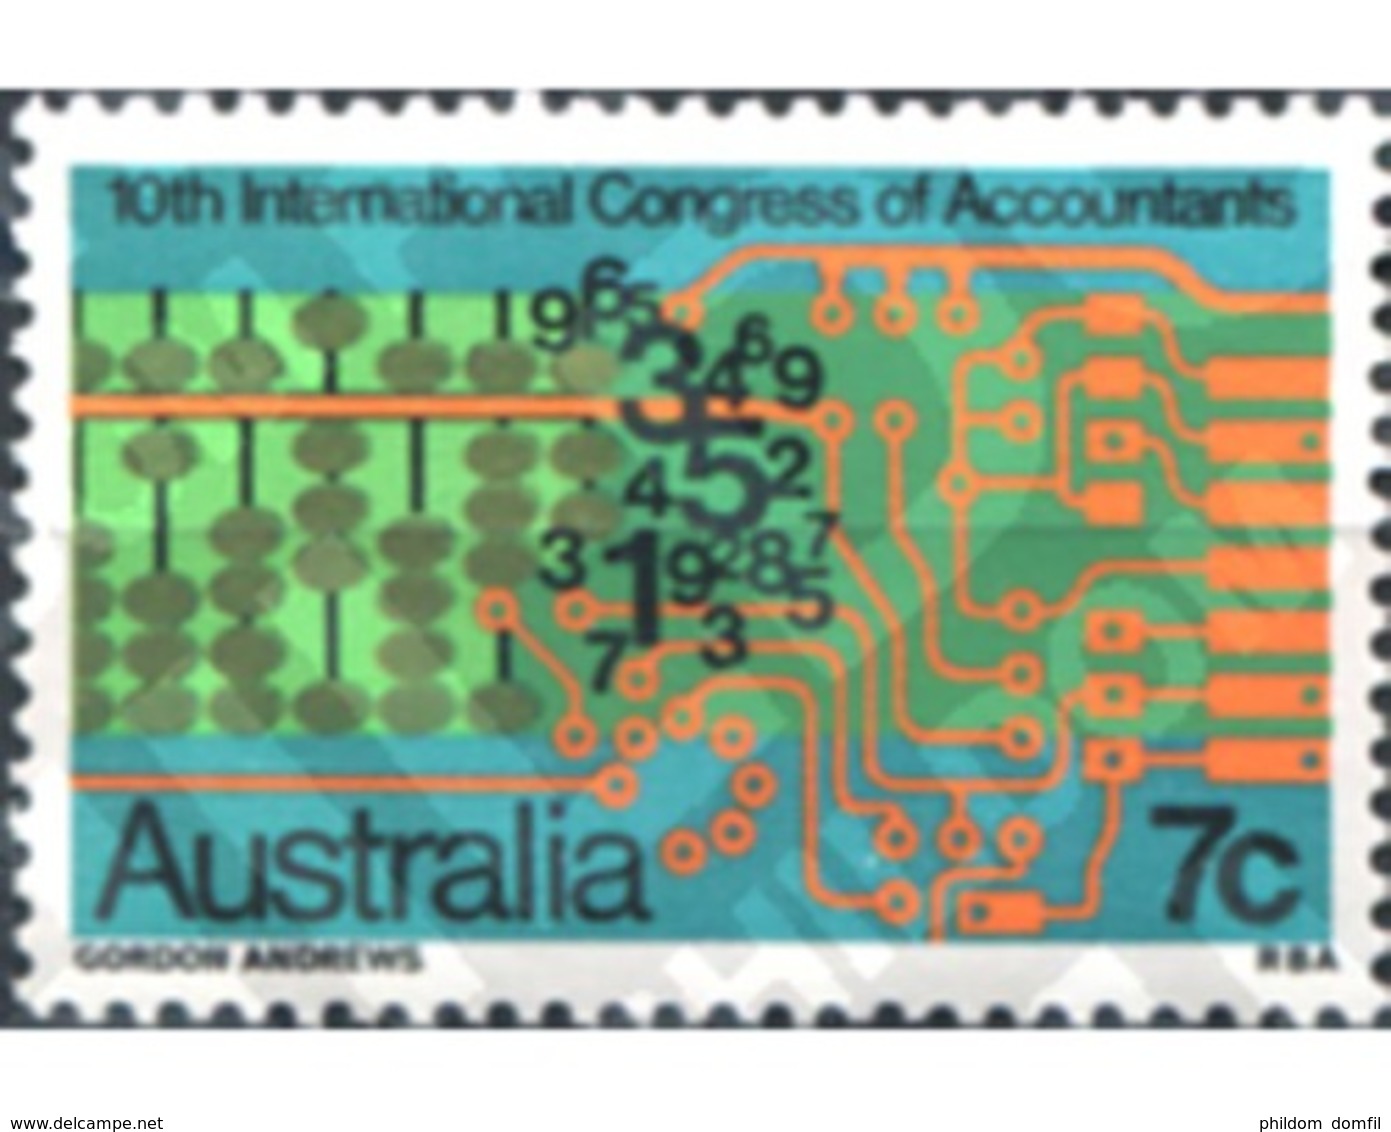 Ref. 161389 * MNH * - AUSTRALIA. 1972. 10 CONGRESO INTERNACIONAL DE CONTABILIDAD - Mint Stamps